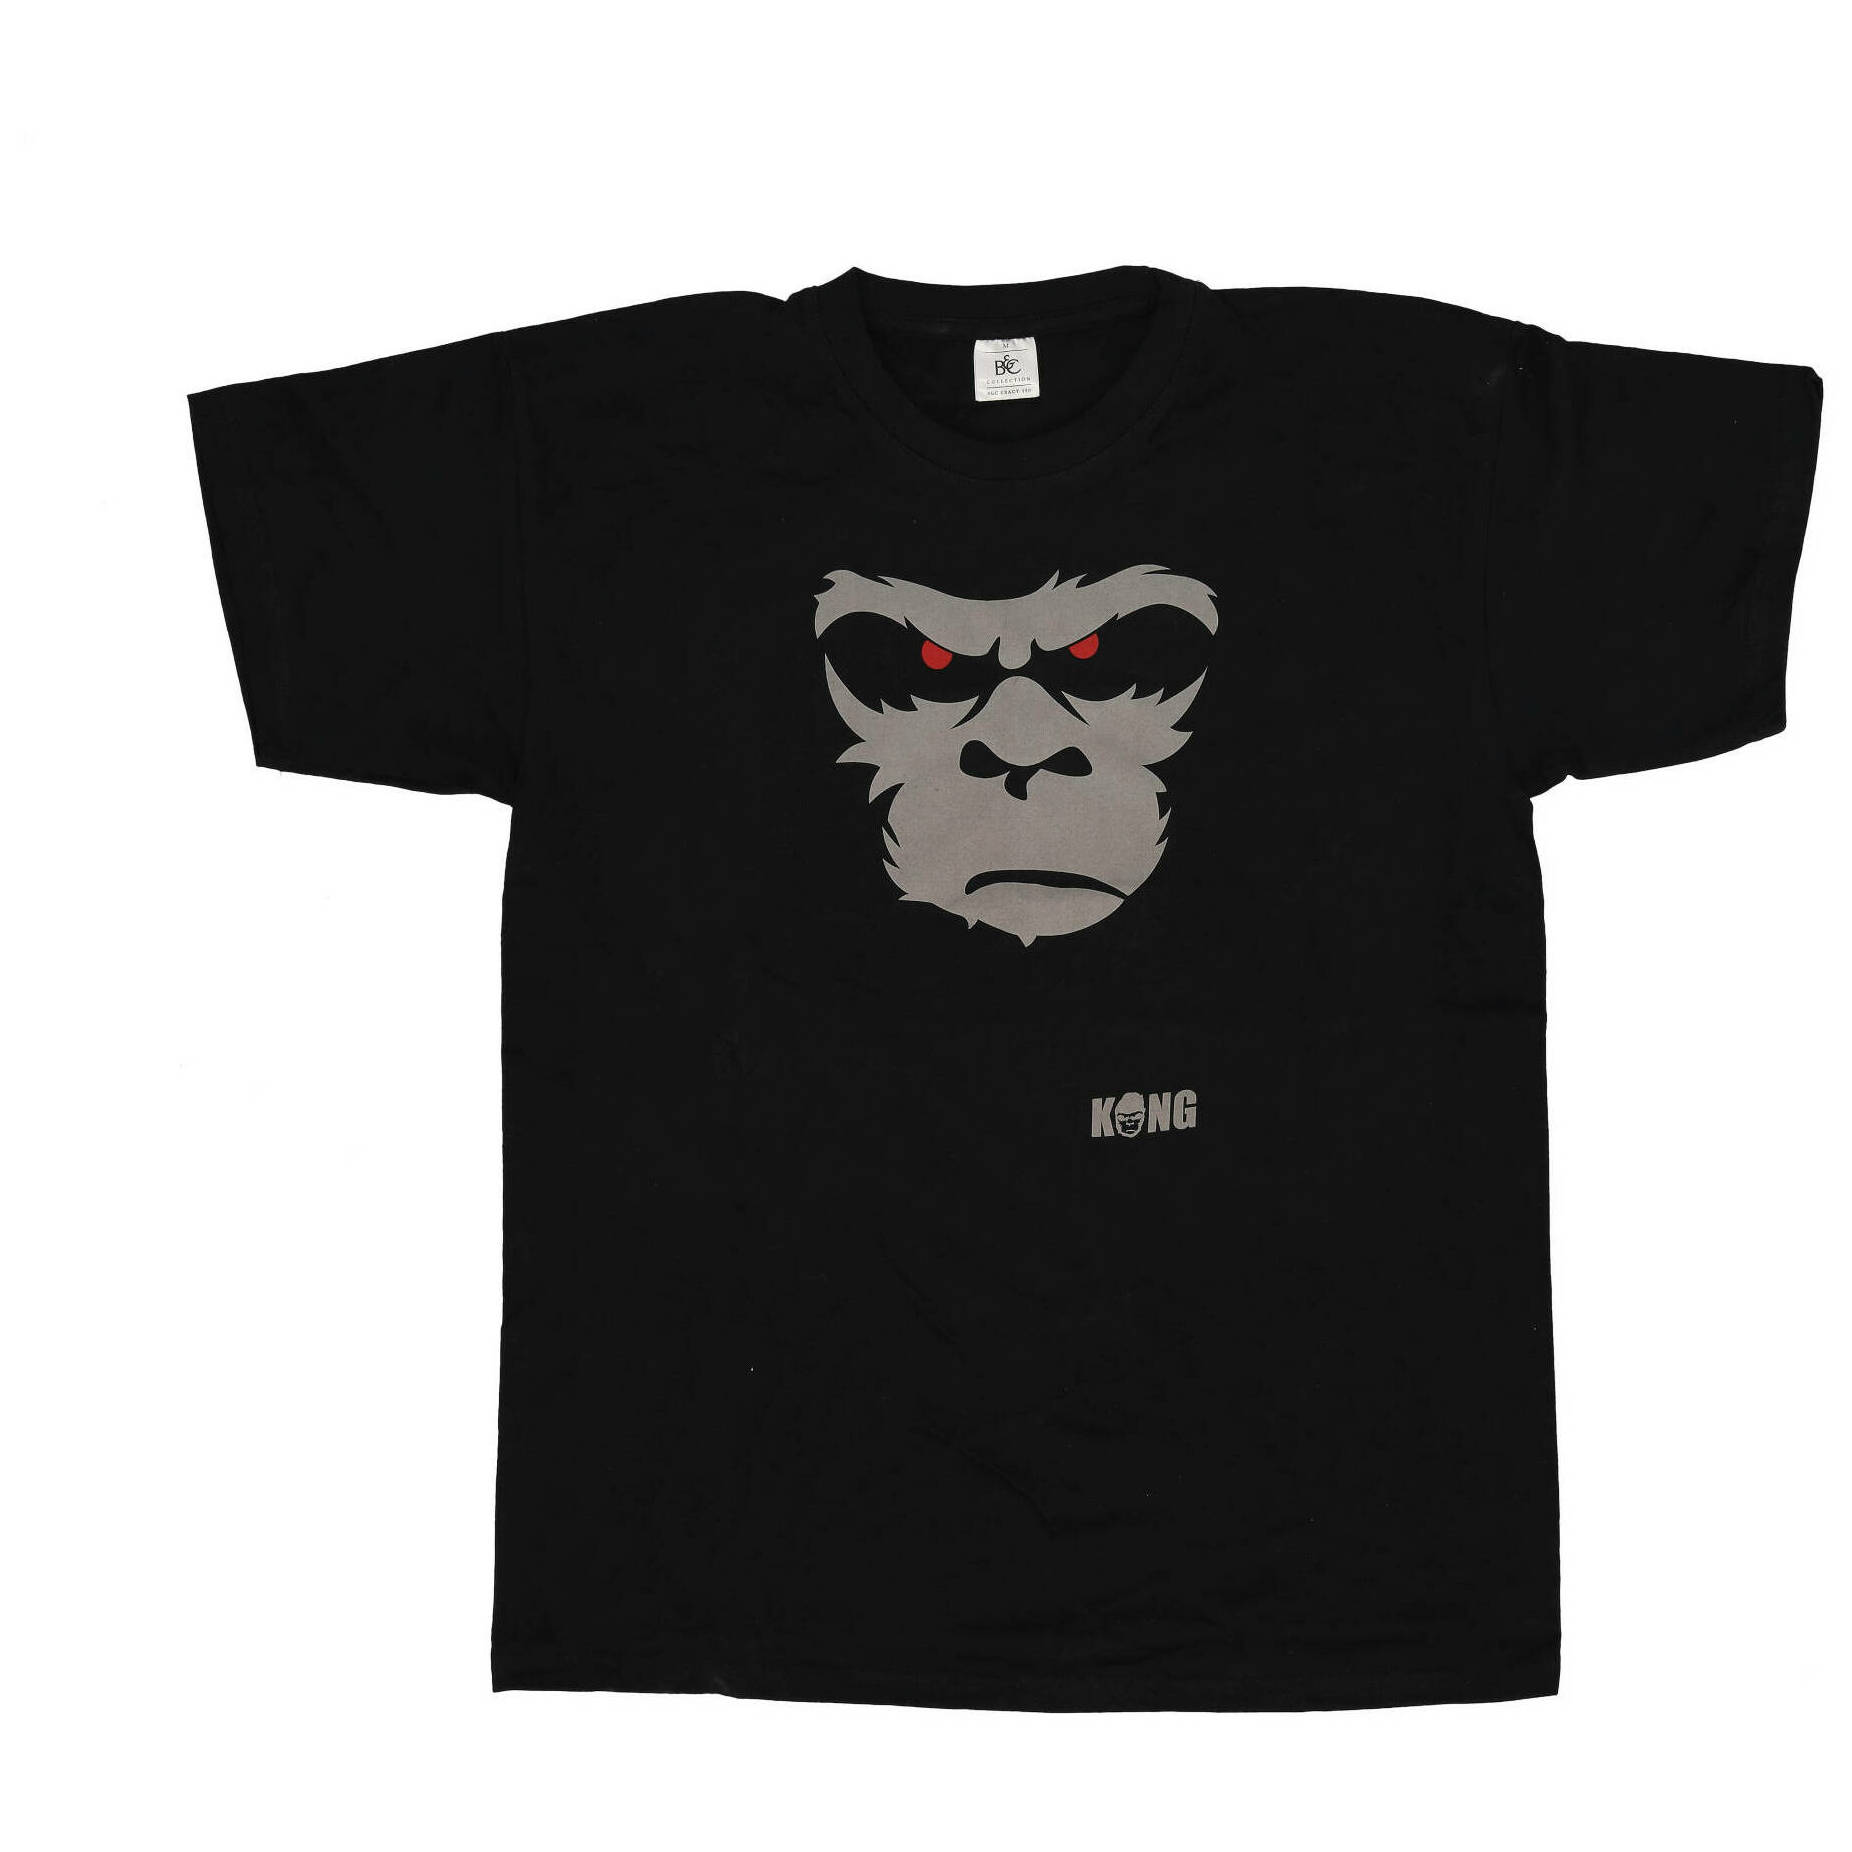 Kong Shirt BLK - XL 1